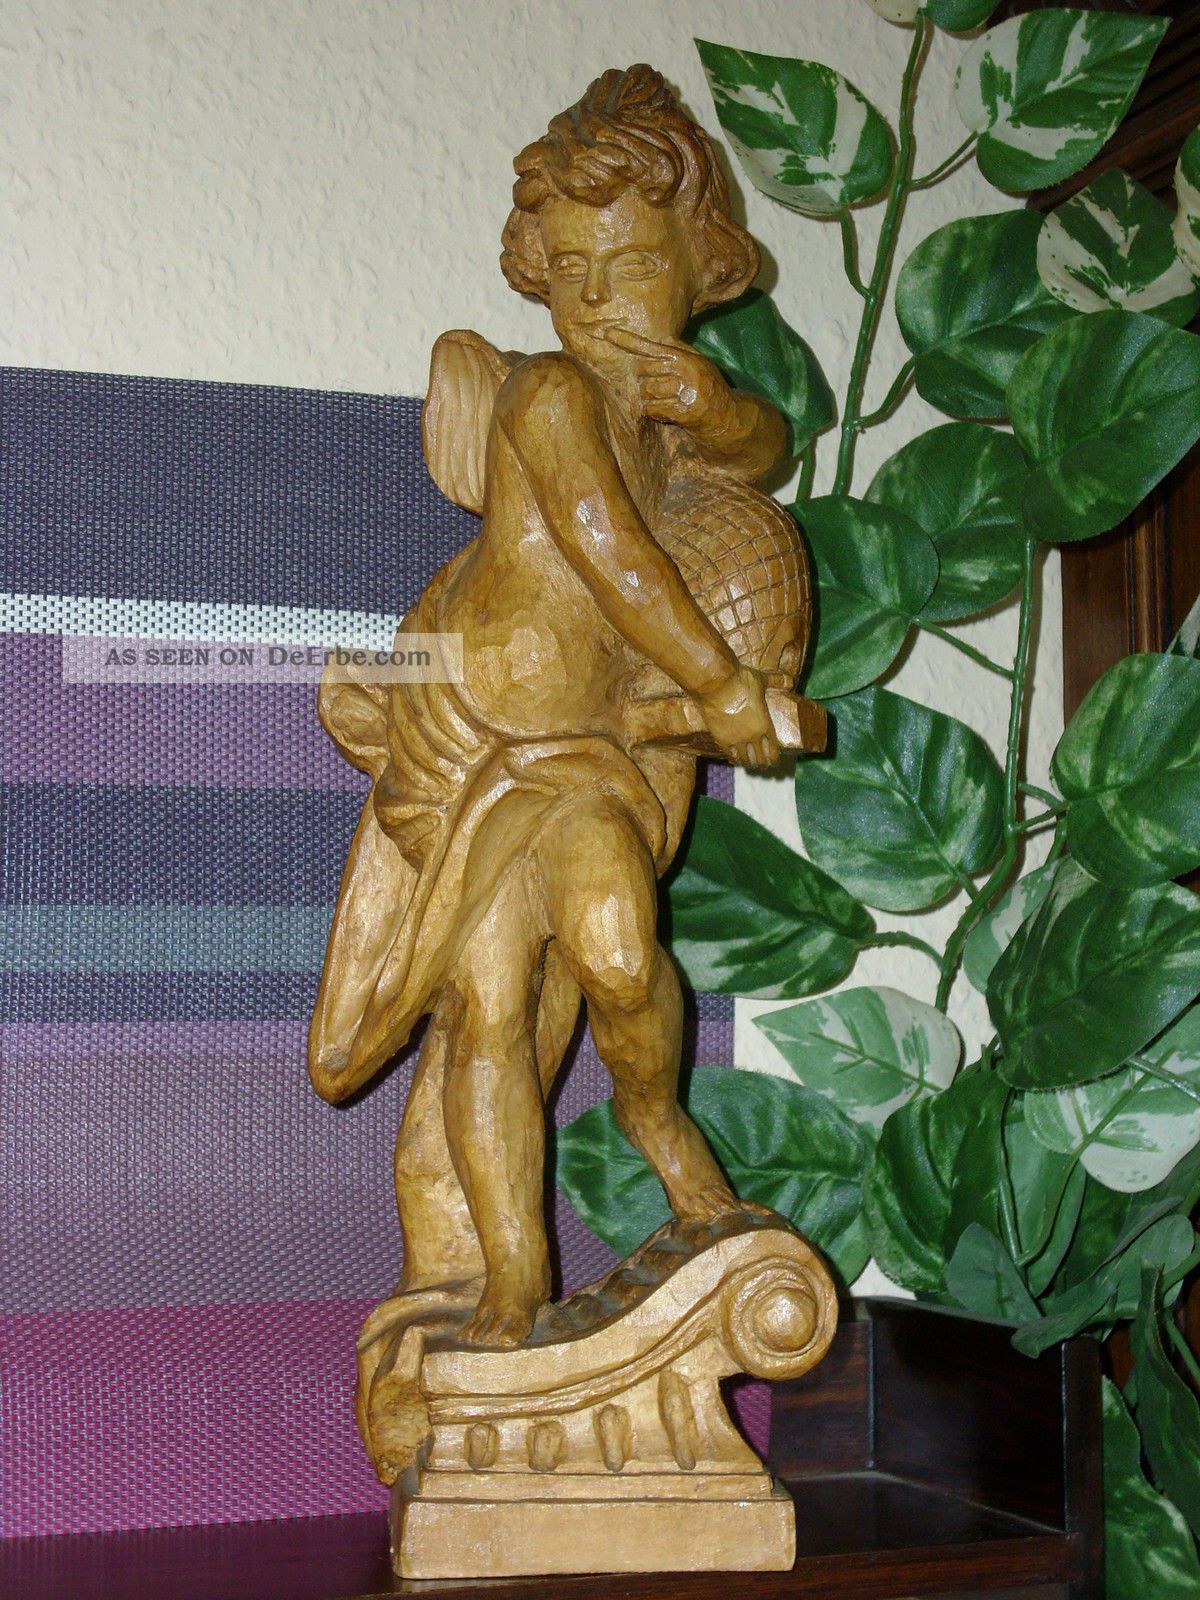 Holzfigur - Heiligenfigur - Putte - Engel - Honigschlecker - Deko -